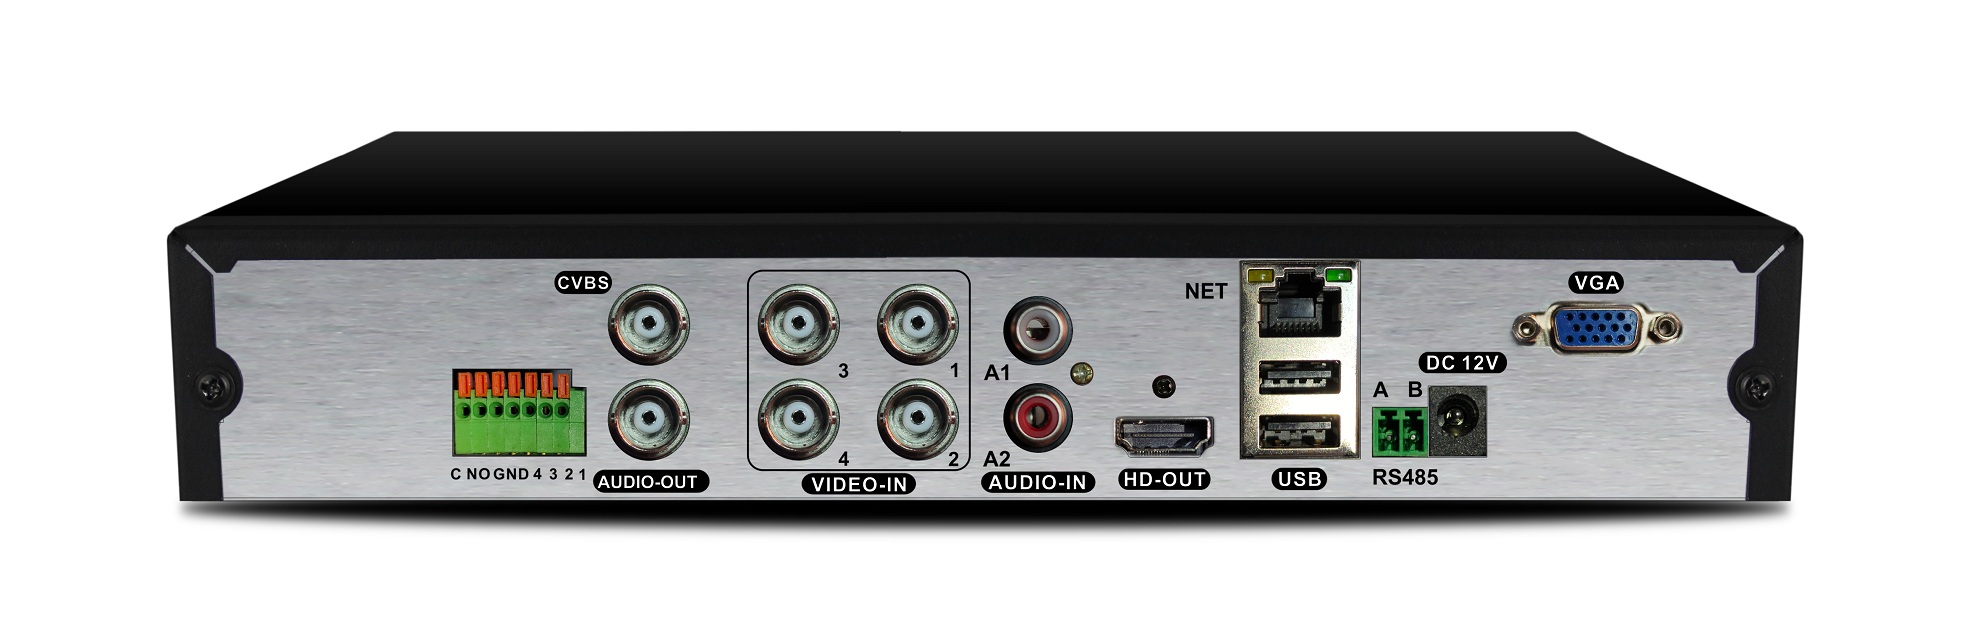 AltCam DVR423 XVR Видеорегистратор 4 канальный 8Mp_Lite 1080P 2 аудио (SATA*1 8ТБ) BitVision